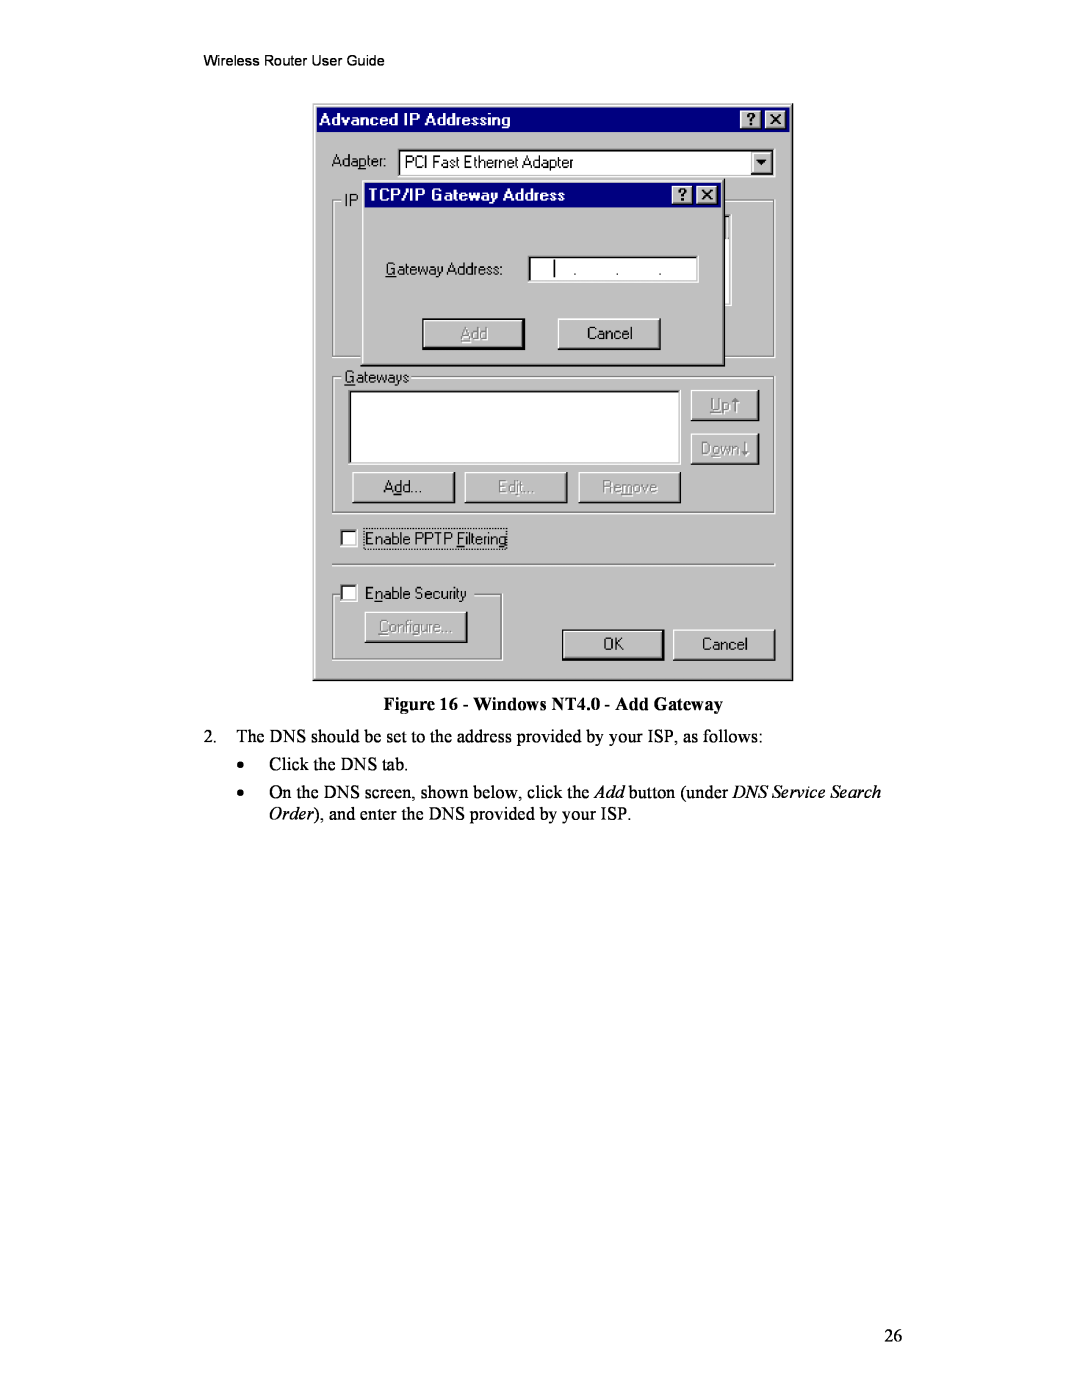 Hawking Technology HWR54G manual Windows NT4.0 - Add Gateway 